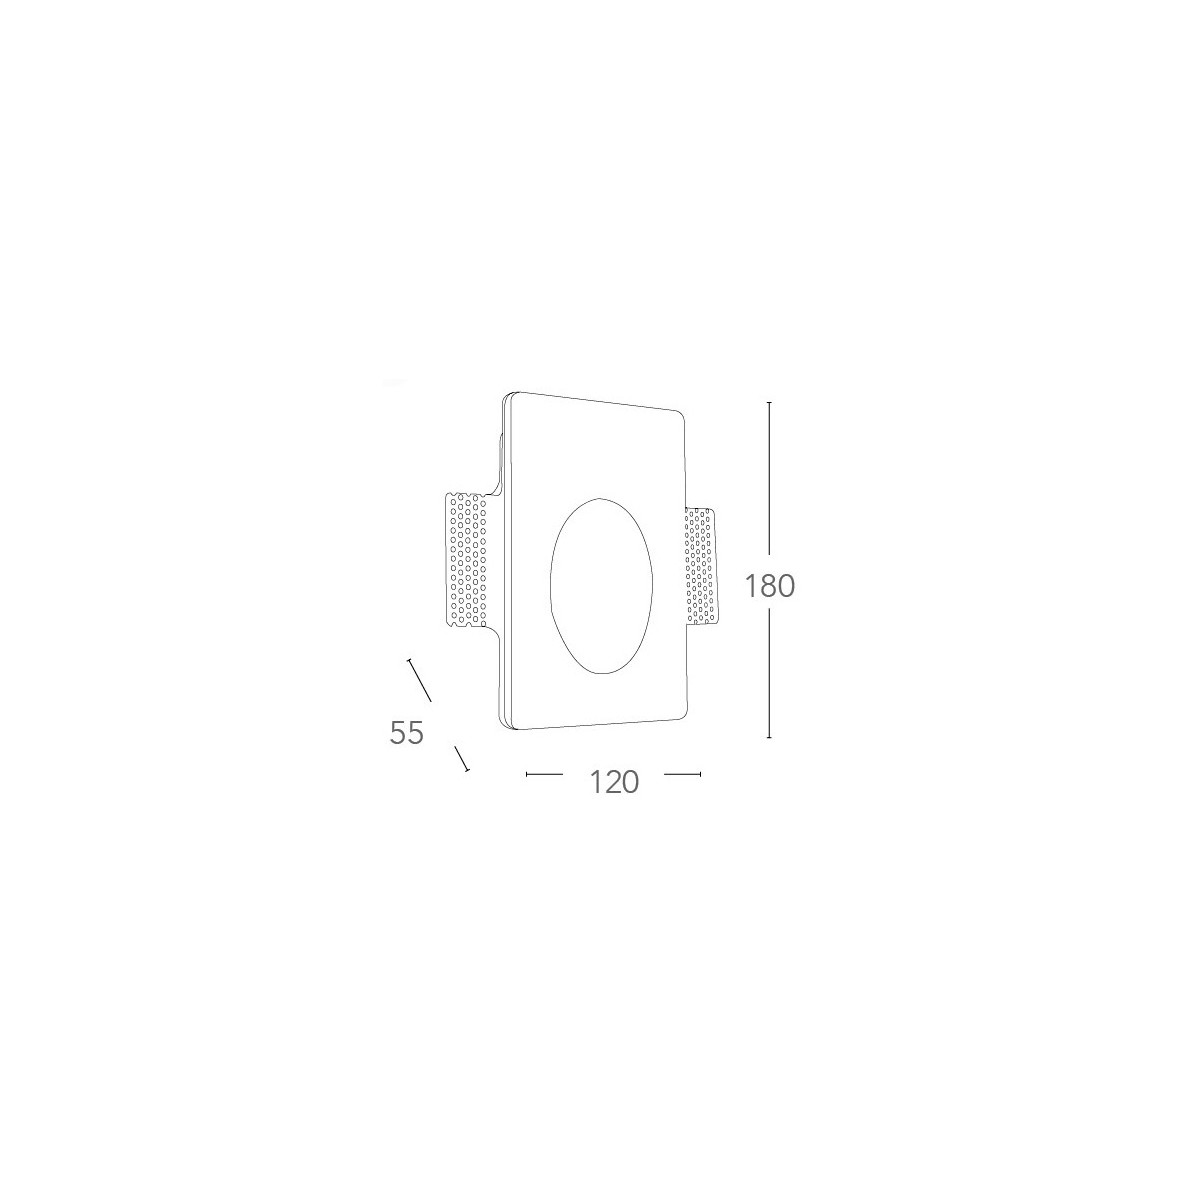 I-ARIEL-RM1 - Spot encastré Spot rétractable Marqueur Paintable Round GU10 mini